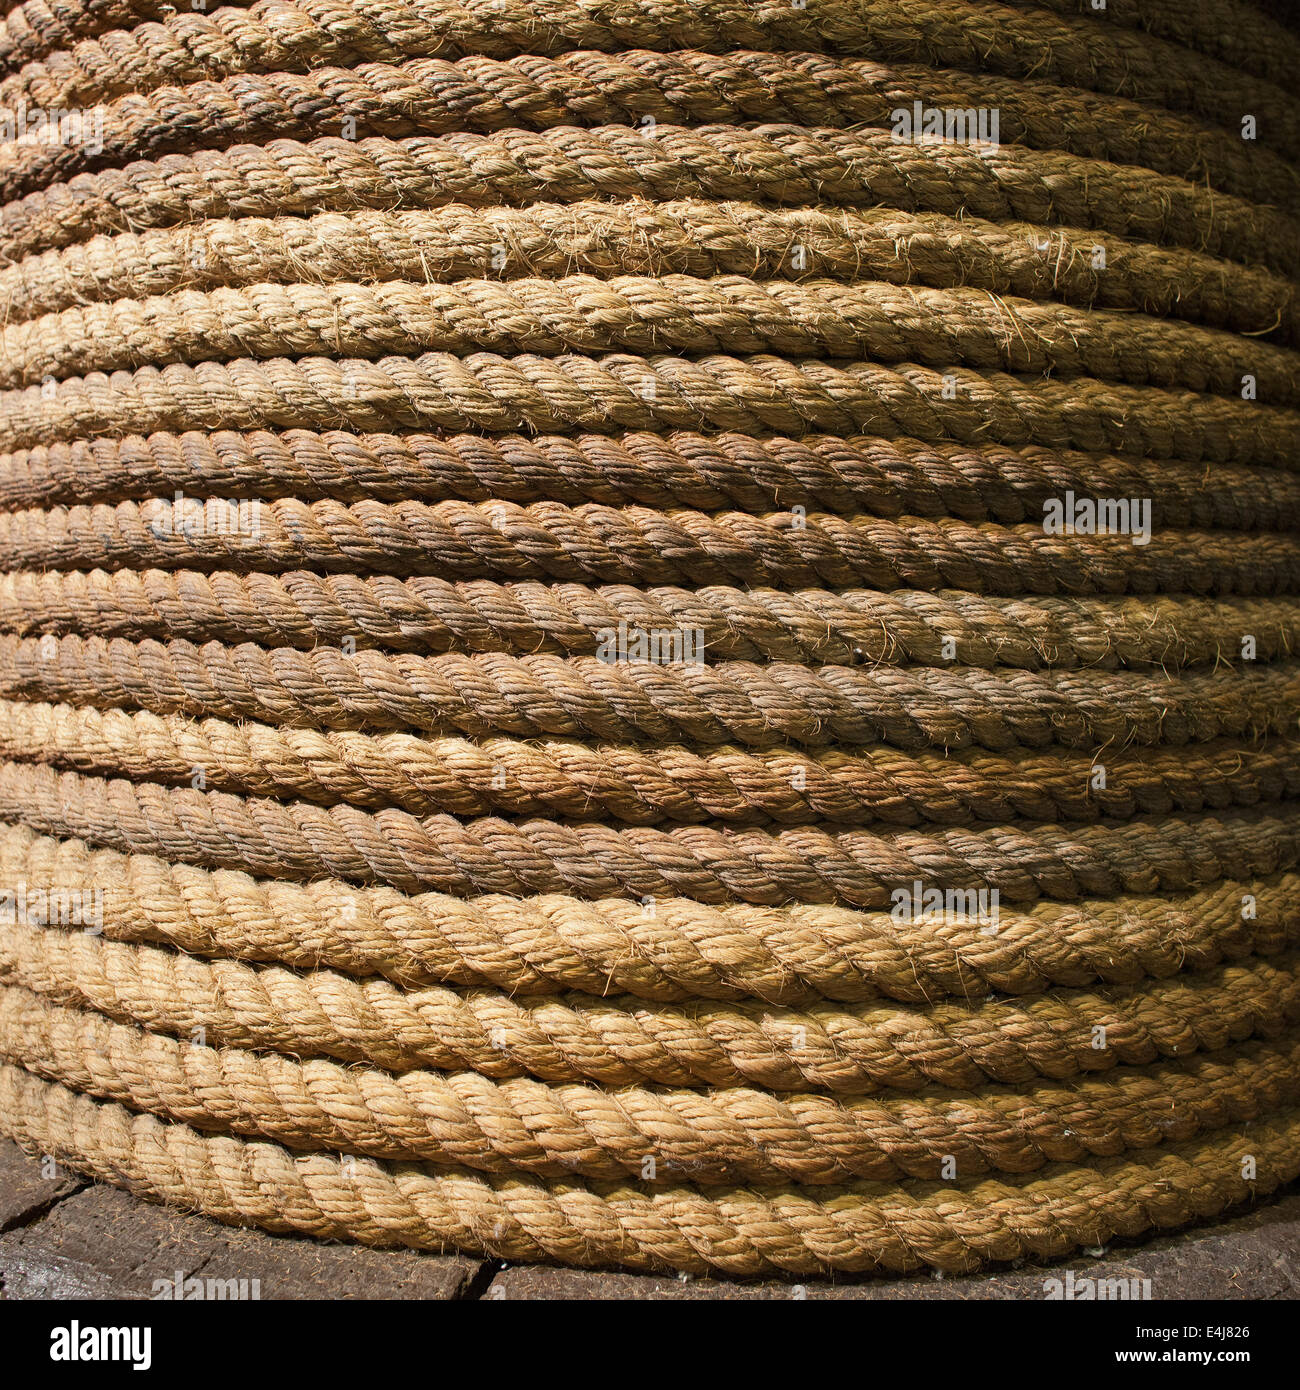 Ein altes aufgerollt, Dicke, lange, starke Seil Hintergrund. Stockfoto